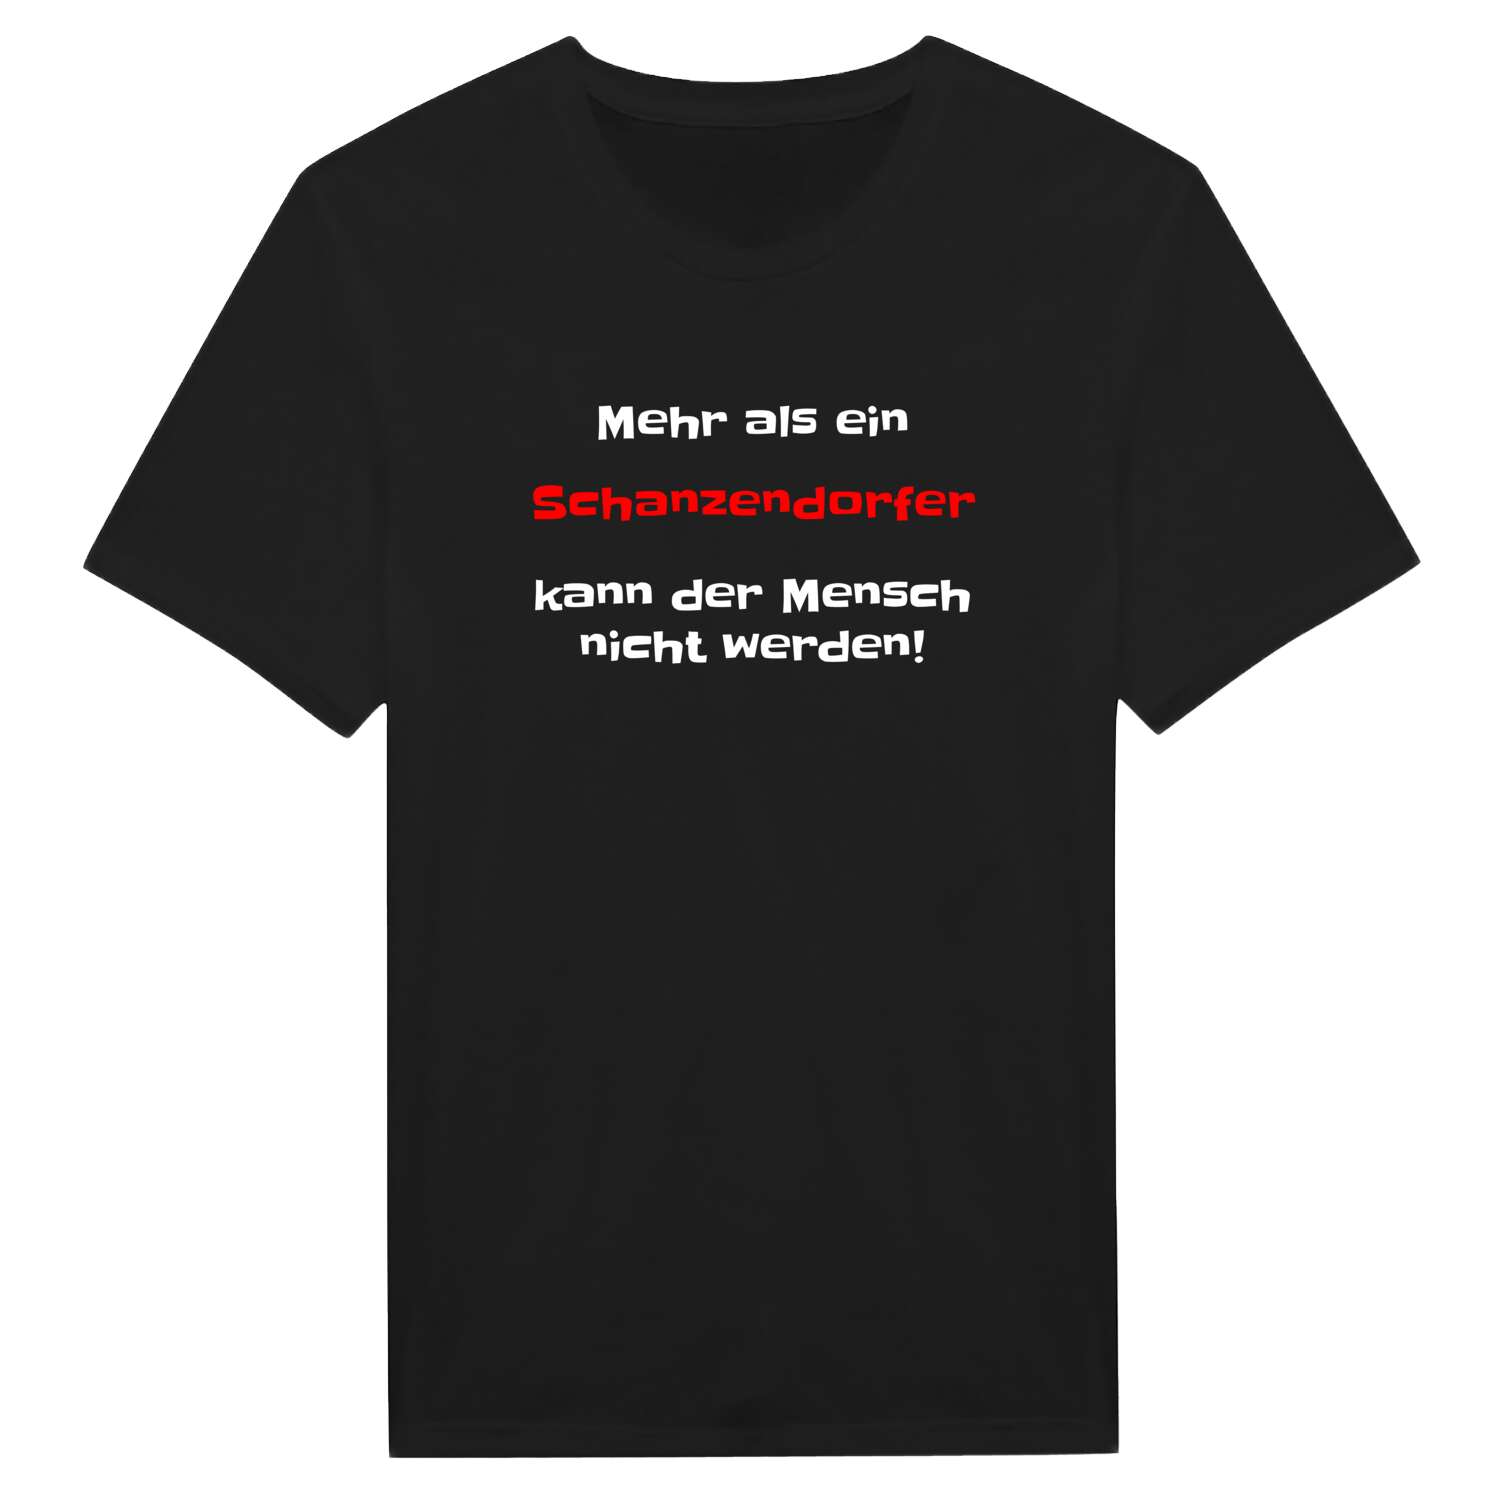 Schanzendorf T-Shirt »Mehr als ein«